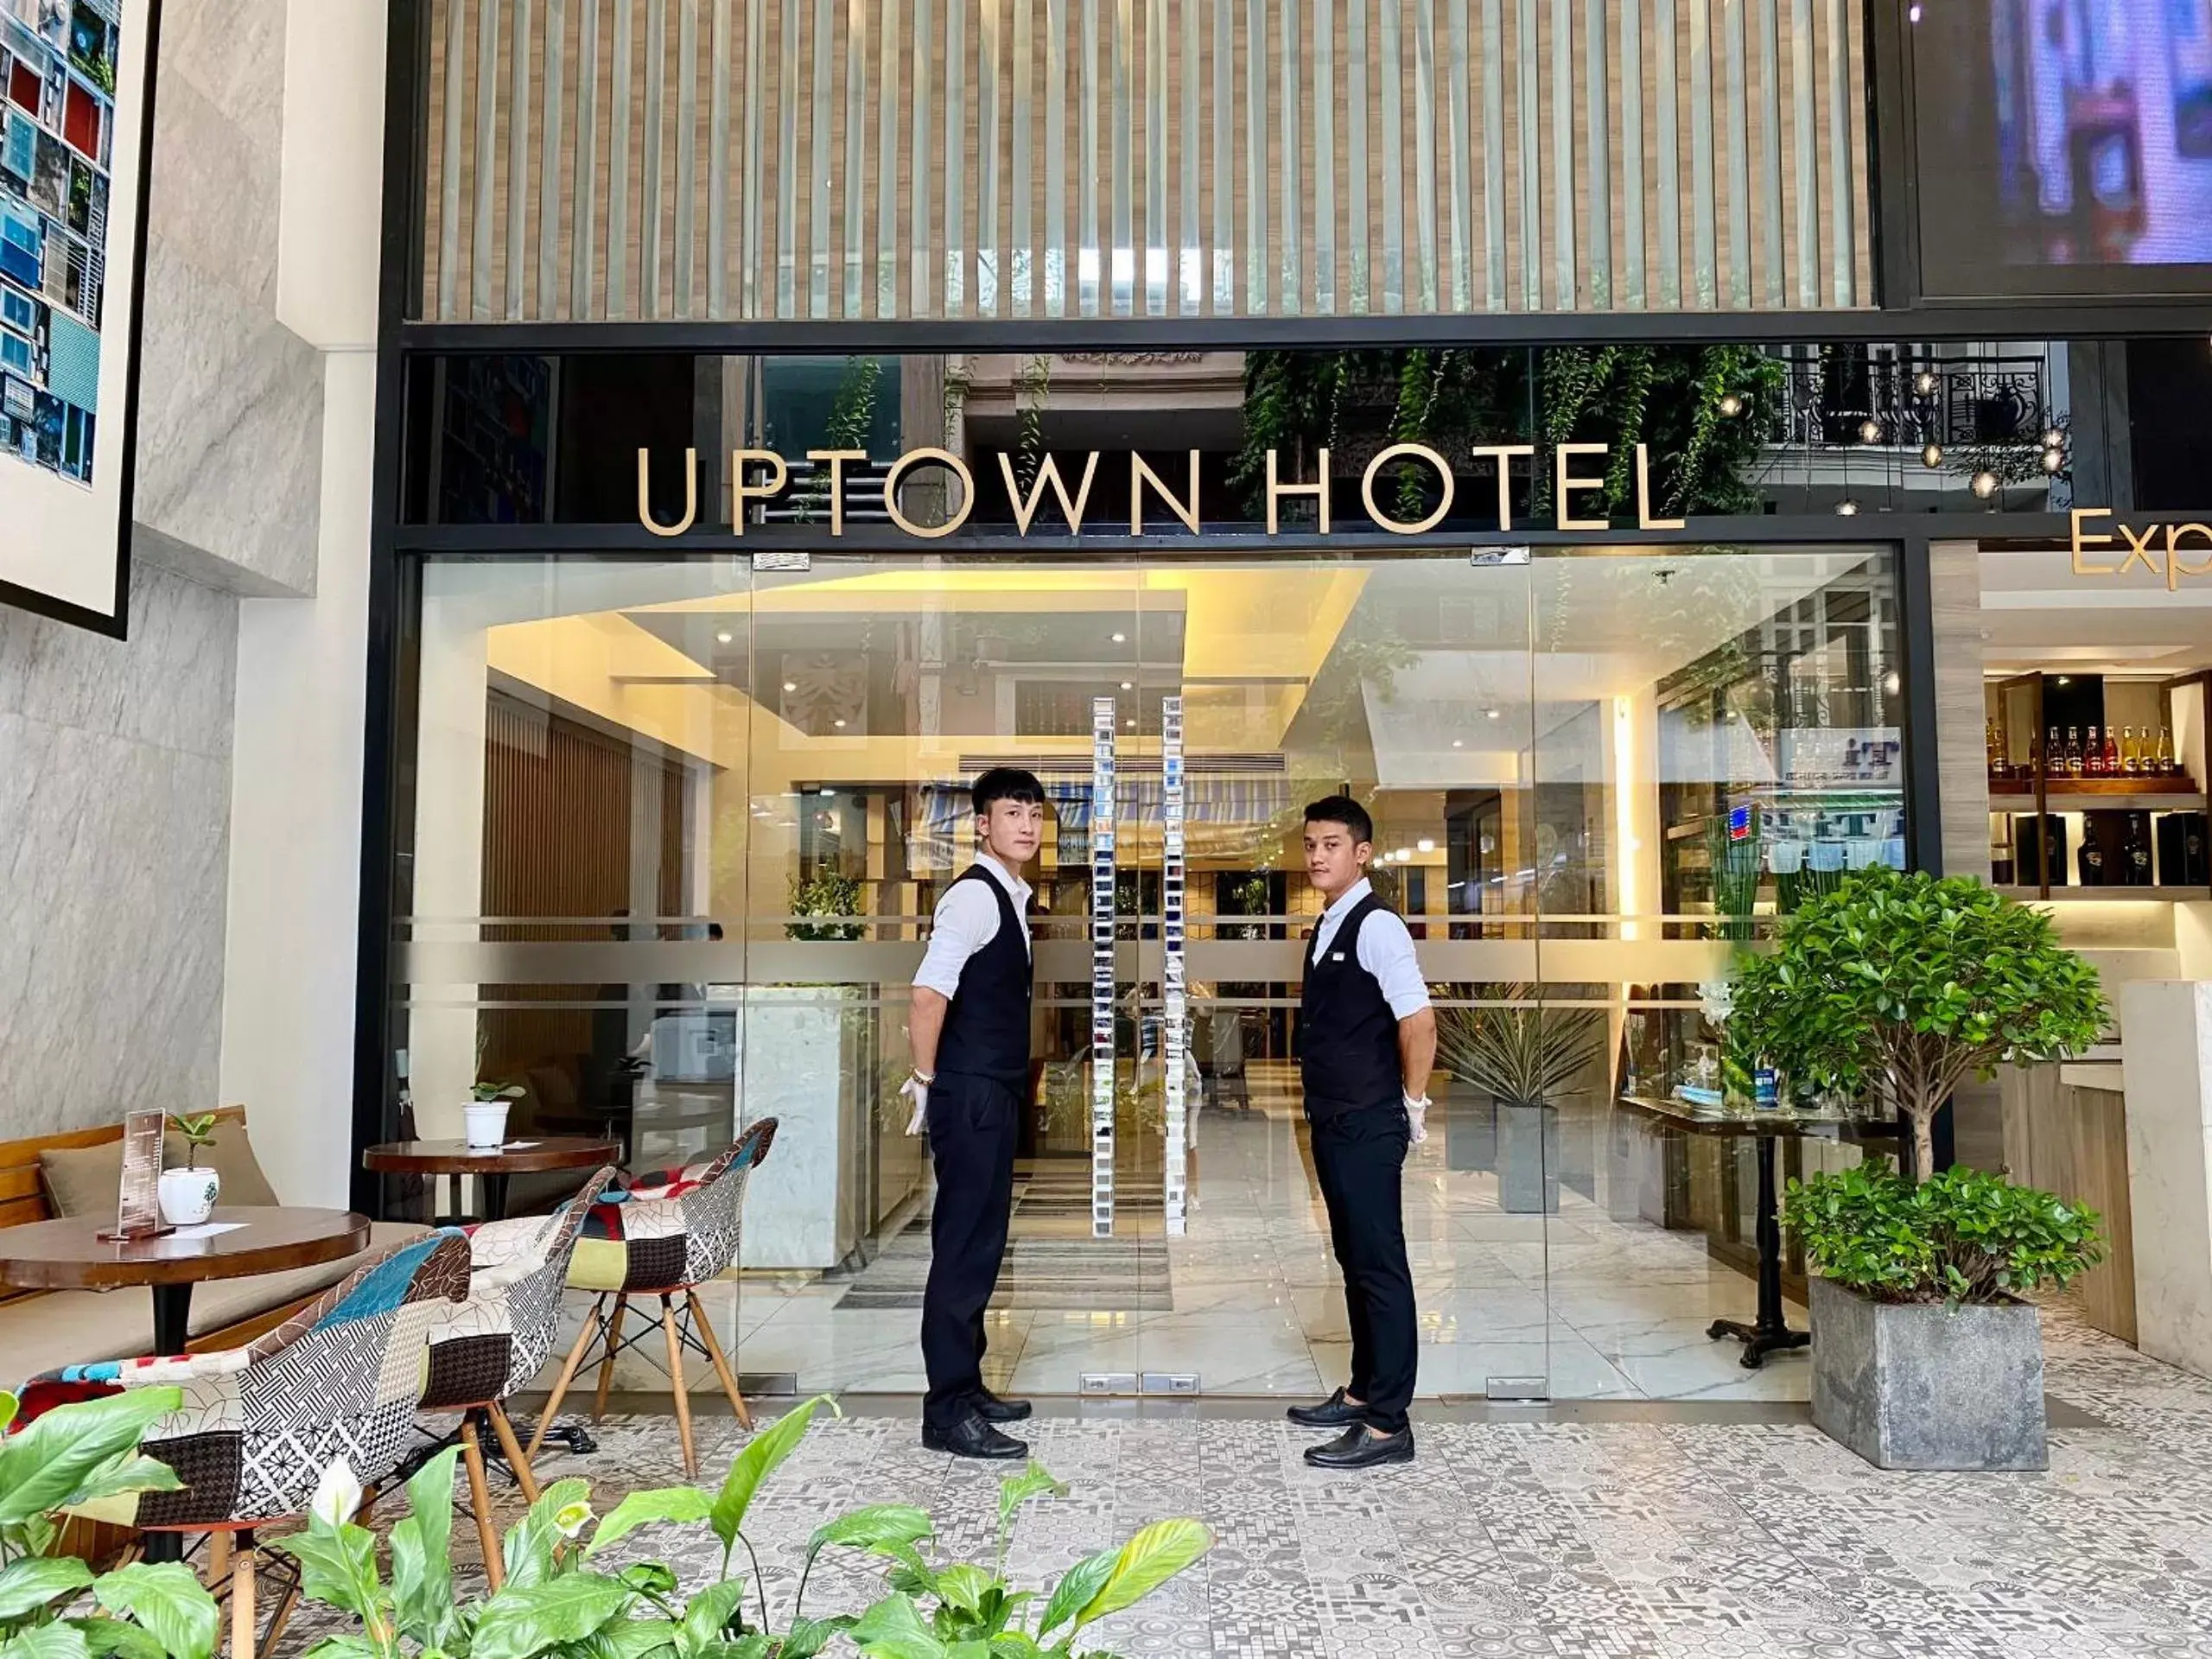 Staff in UpTown Hotel